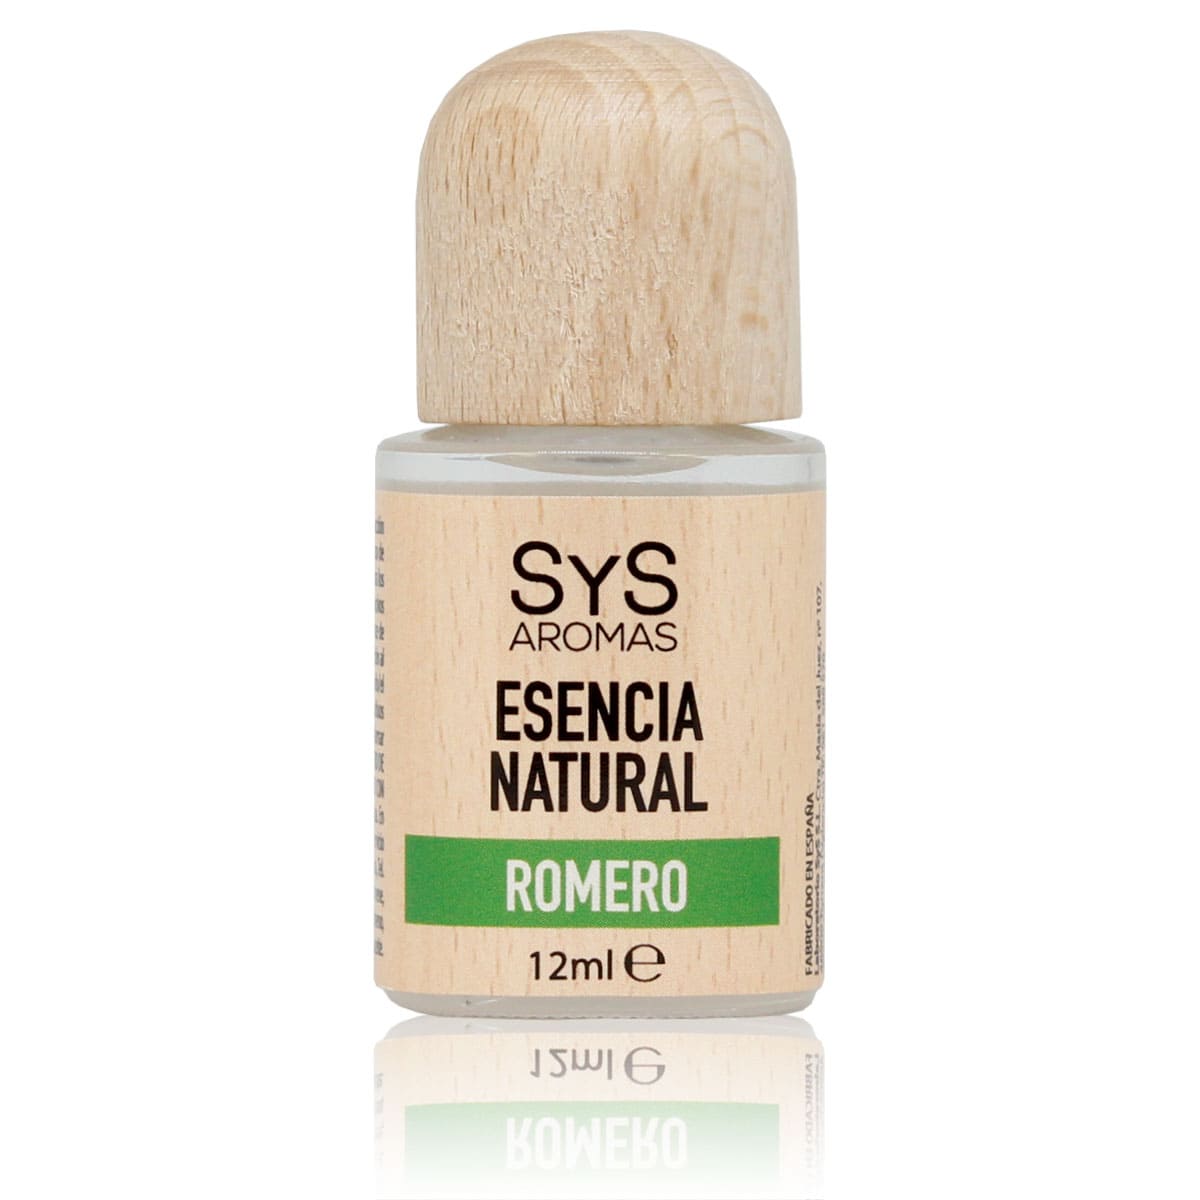 Buy Rosemary Essence 12ml SYS Aromas